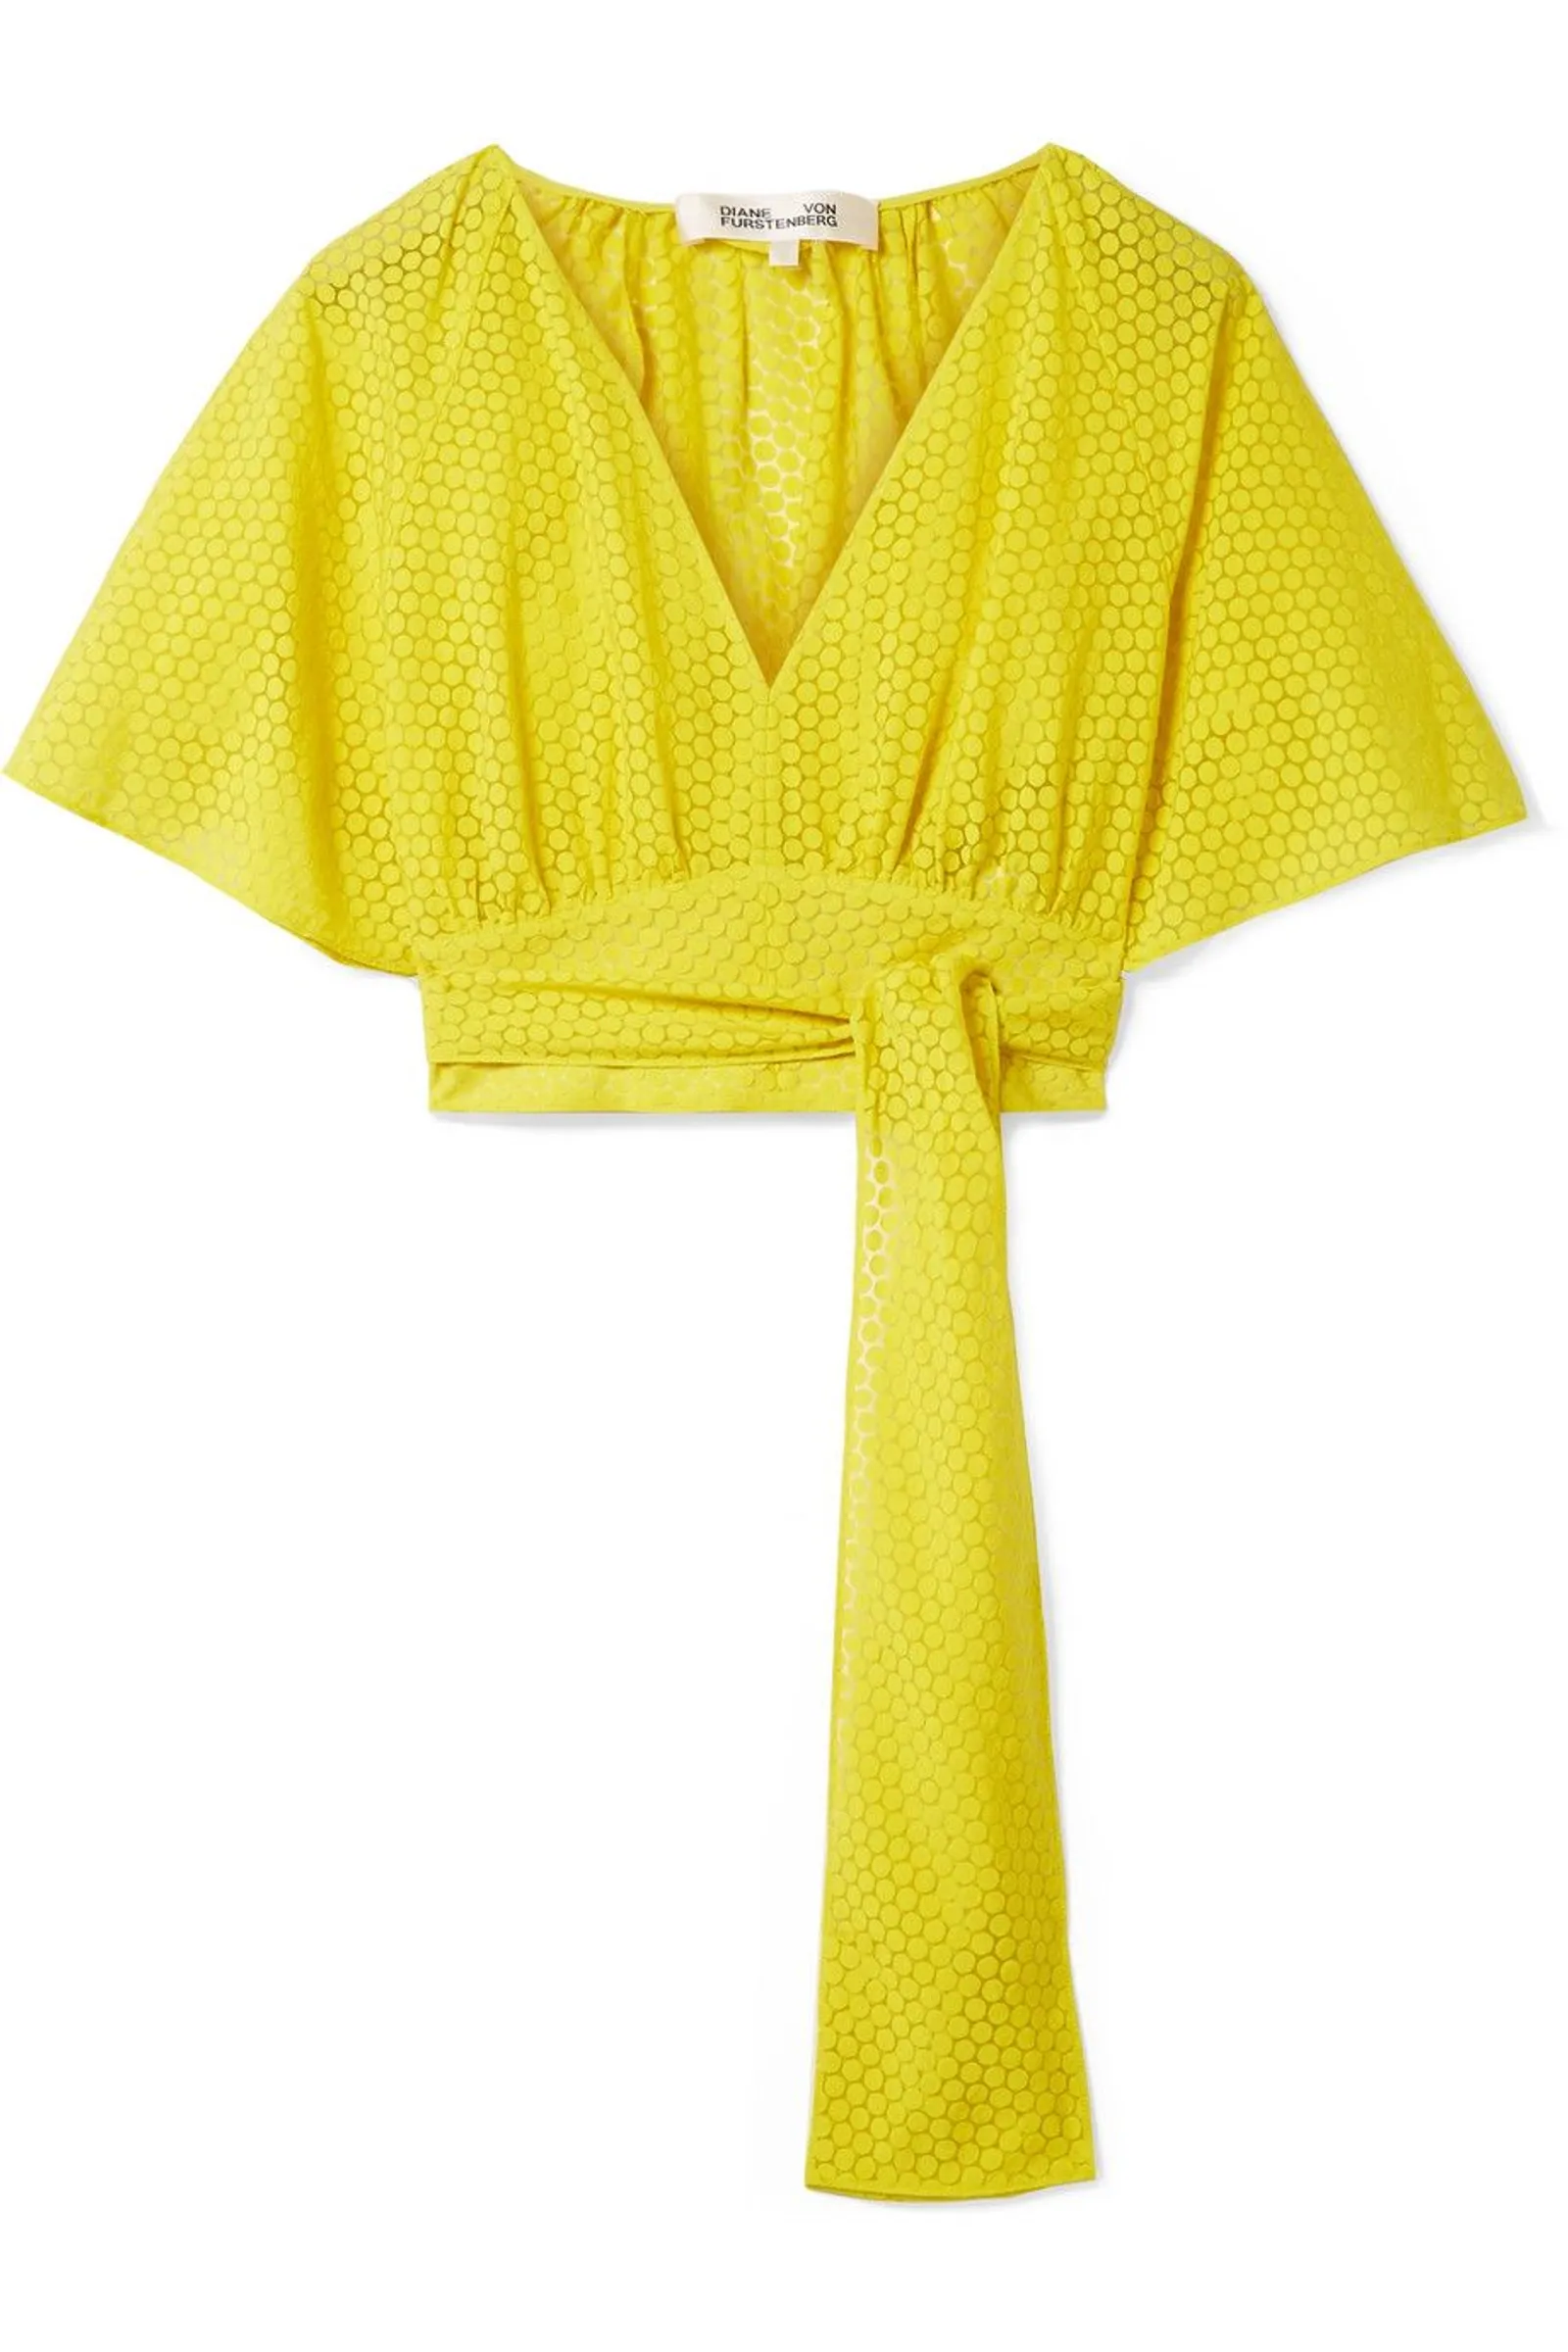 #PopbelaOOTD: Lebih Gorgeous dengan Warna Kuning!